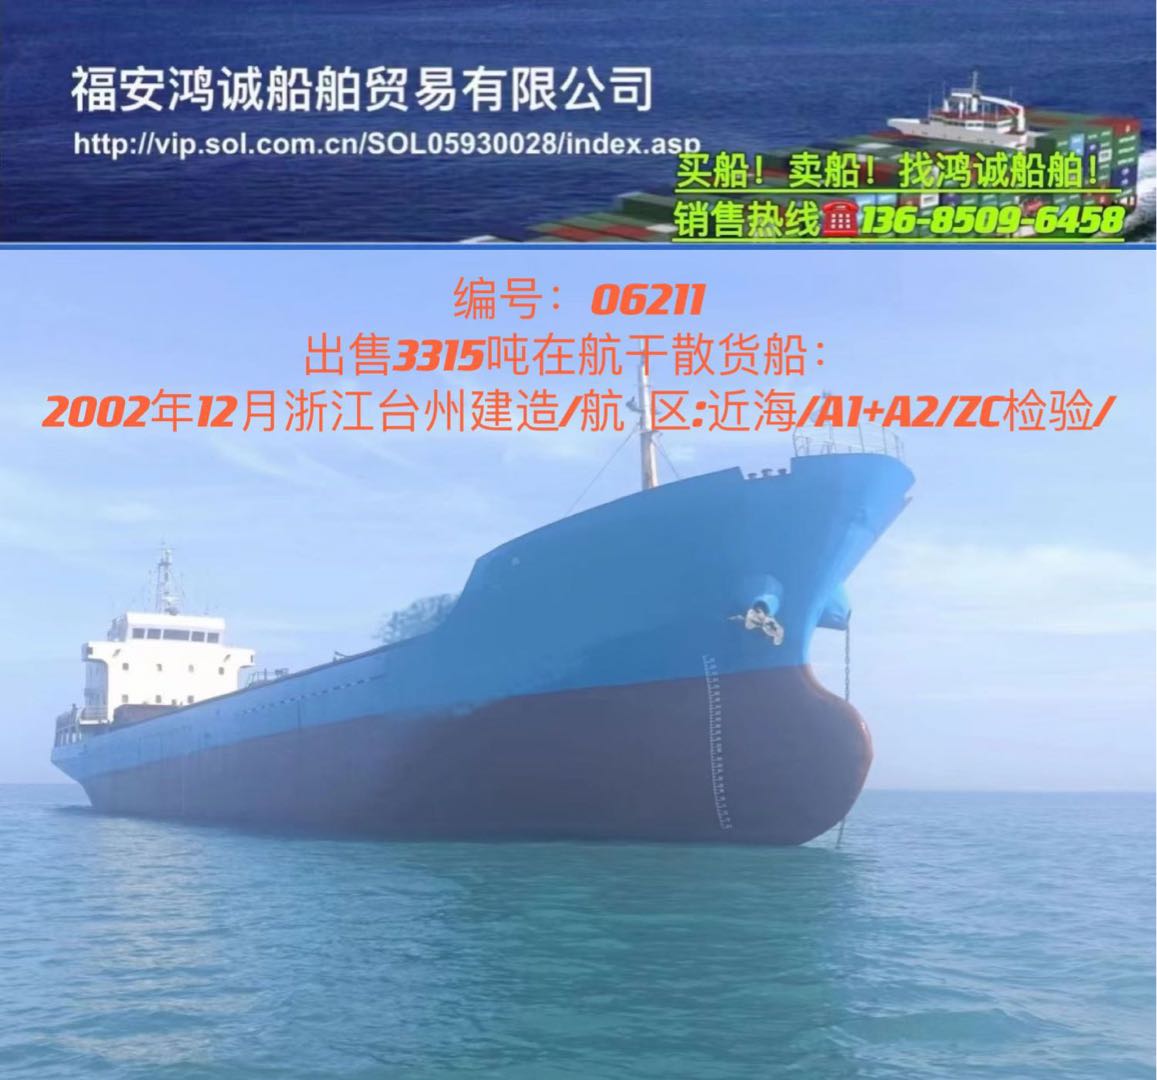 低价出卖3315吨正在航干货船 祸建 宁德市-2.jpg